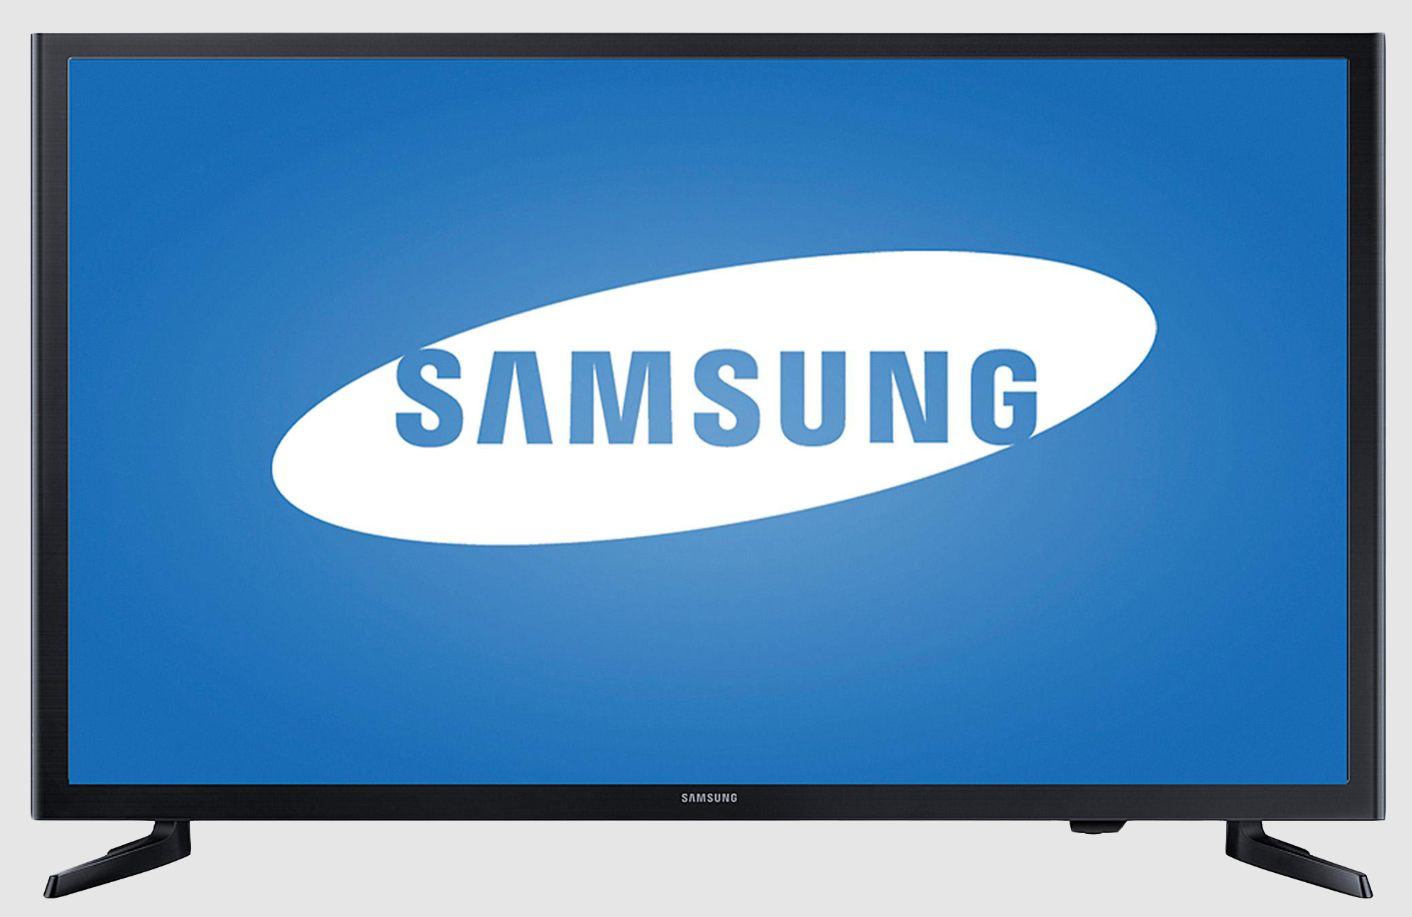 Kelebihan dan kekurangan TV Led Samsung